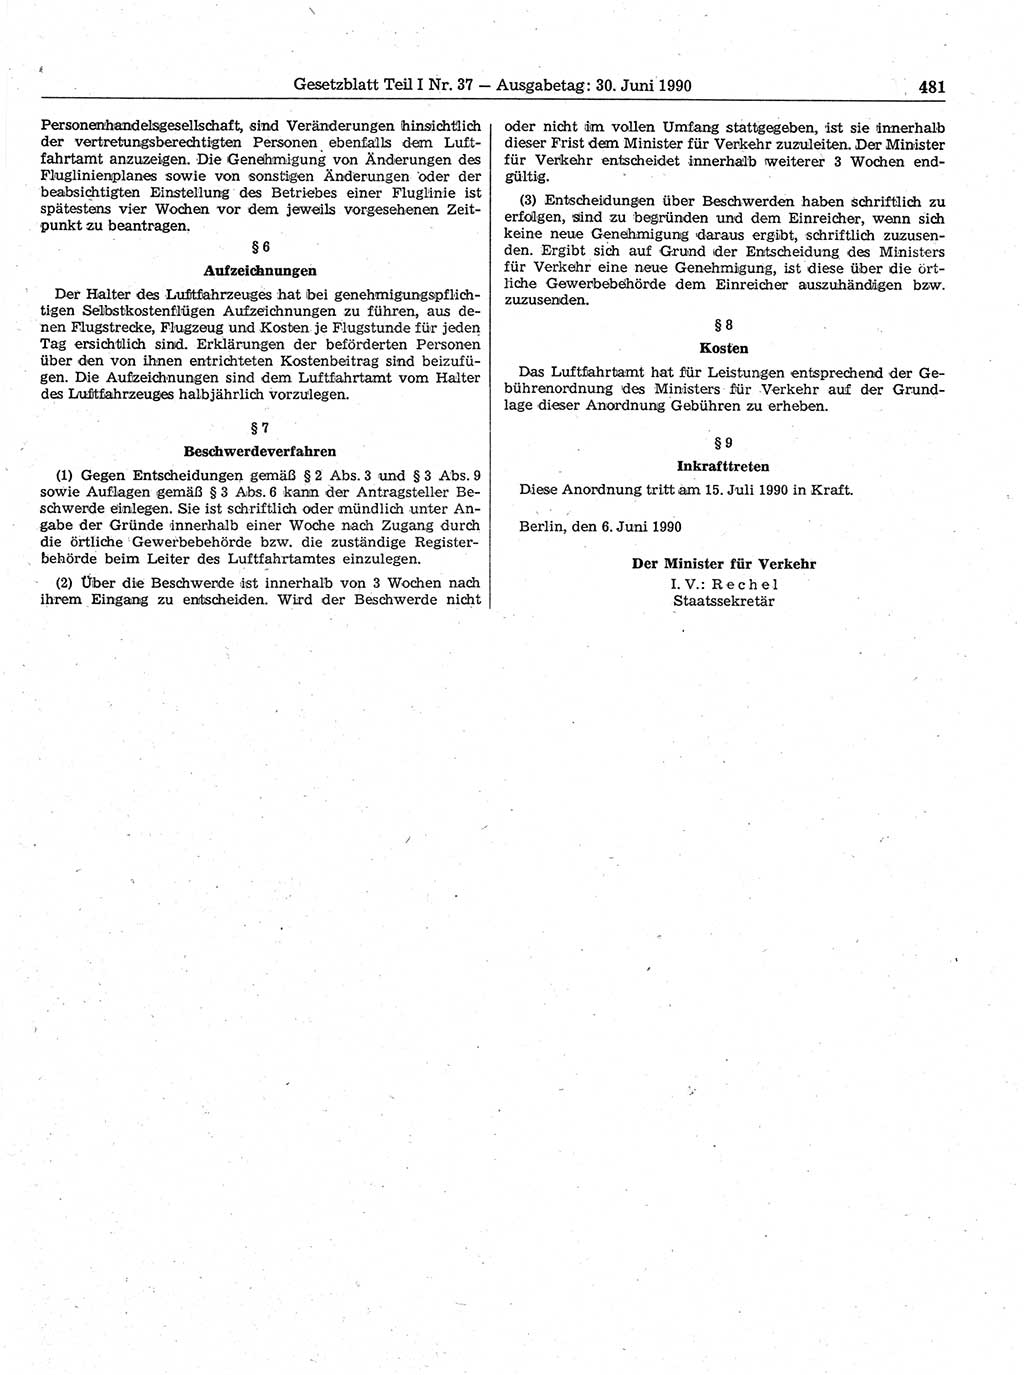 Gesetzblatt (GBl.) der Deutschen Demokratischen Republik (DDR) Teil Ⅰ 1990, Seite 481 (GBl. DDR Ⅰ 1990, S. 481)